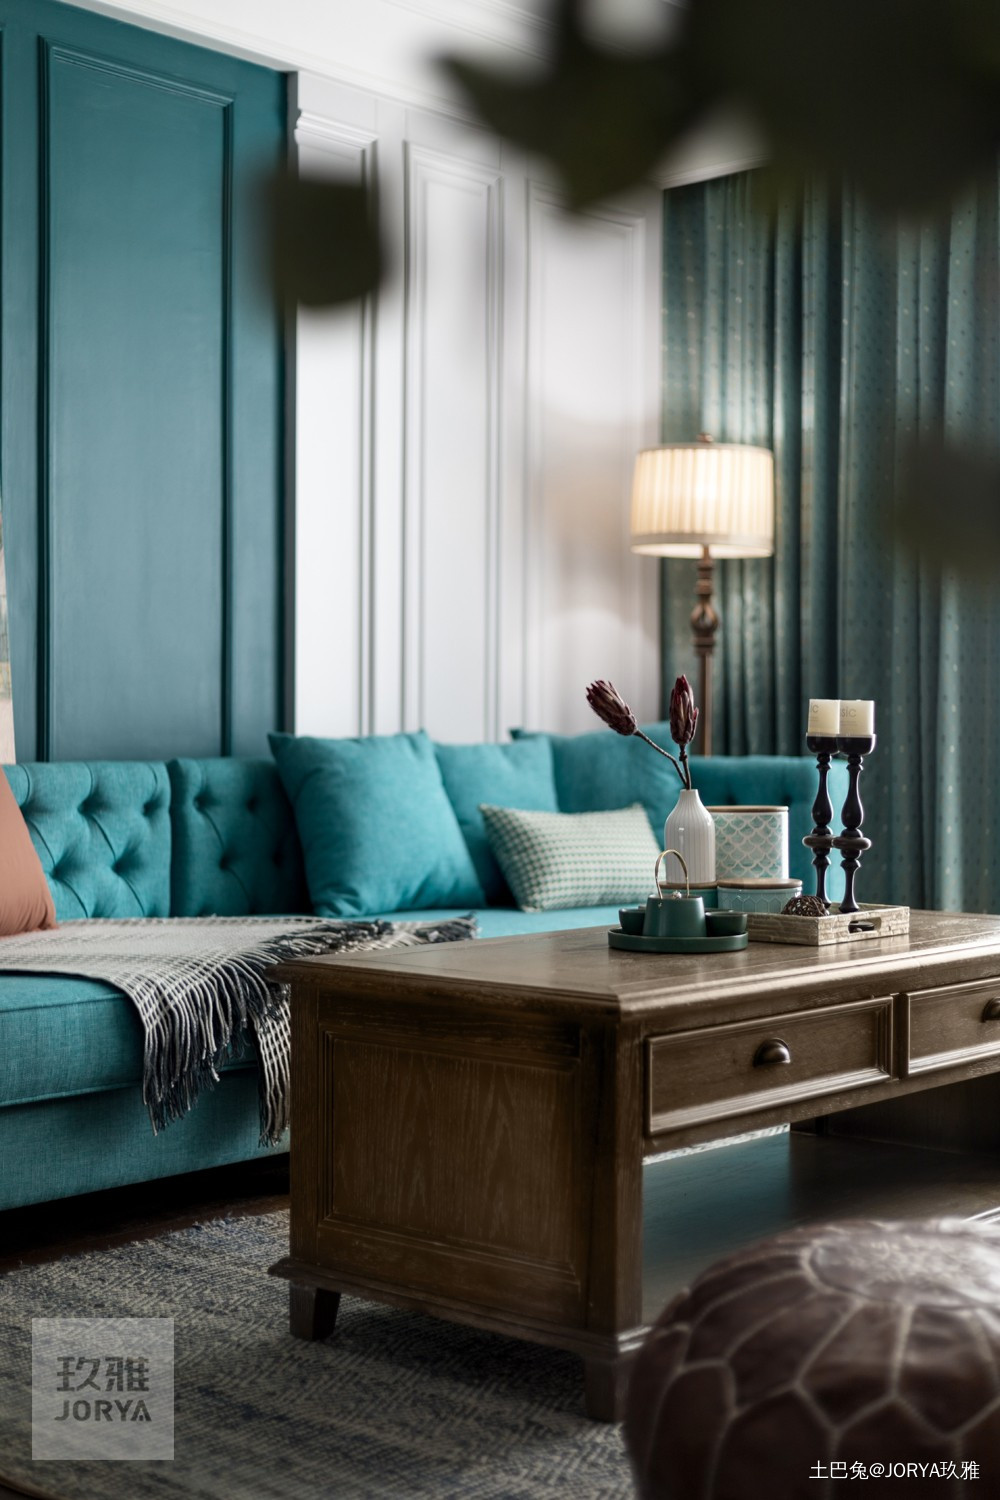 美式厚重与中式古朴混搭呈现温文尔雅的家美式客厅设计图片赏析